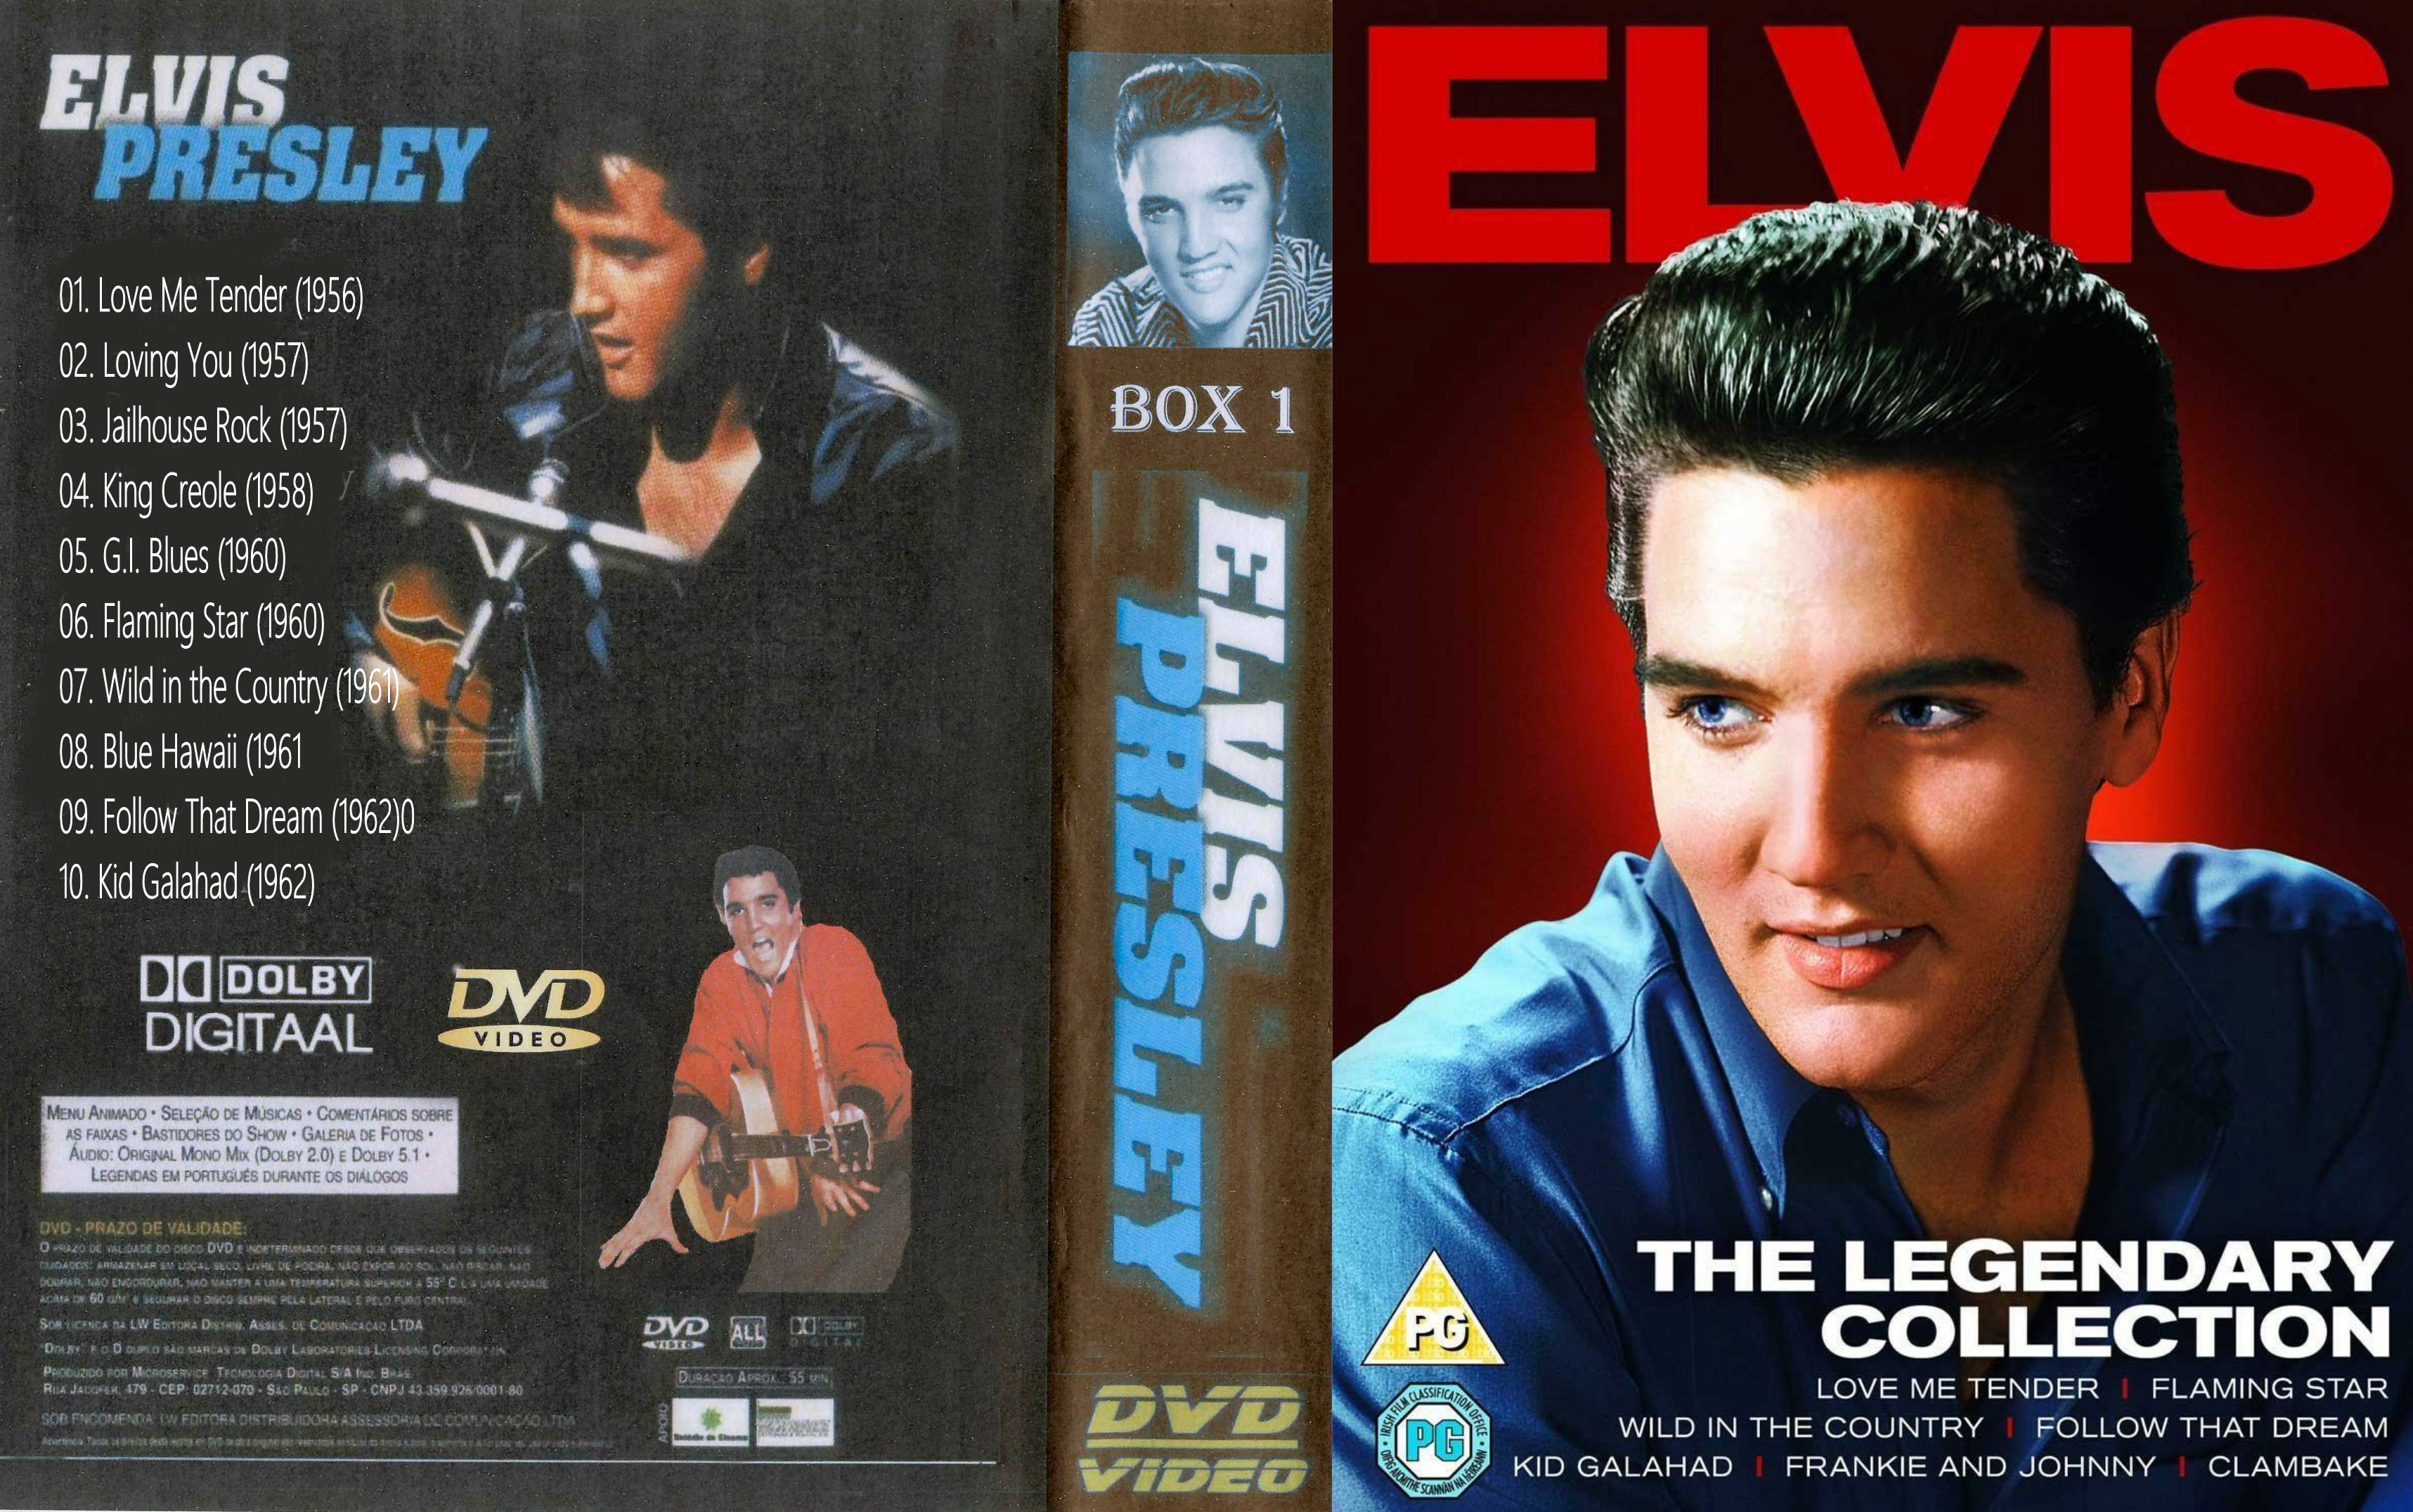 Elvis Presley Collectie ( 09 - Follow That Dream ) DvD 9 van 31